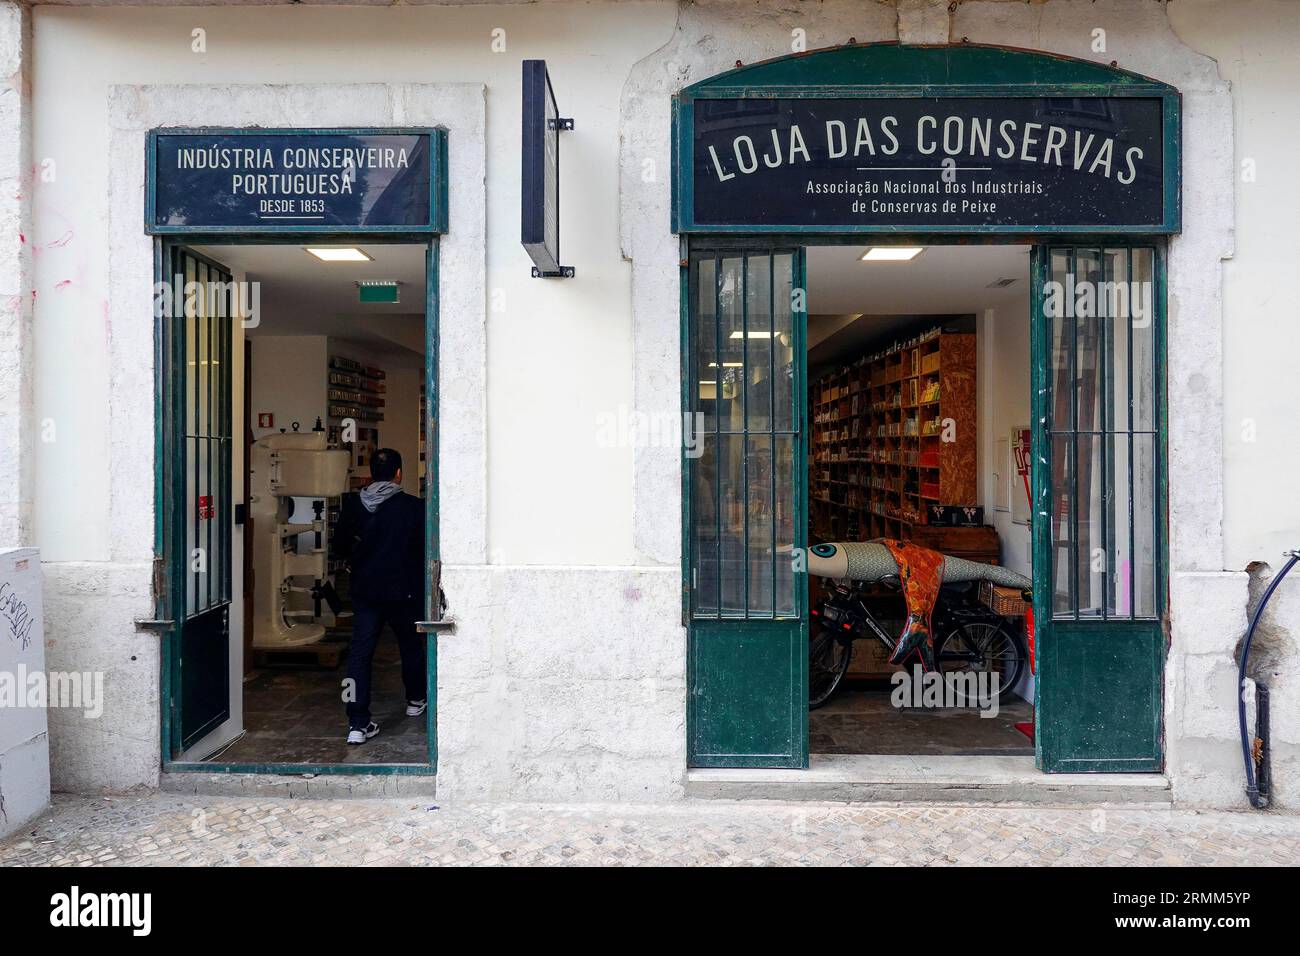 Portugal, Lisbonne, Loja das Conservas, un projet parrainé par l'Association nationale de l'industrie du poisson en conserve, est un magasin qui rassemble des produits f Banque D'Images